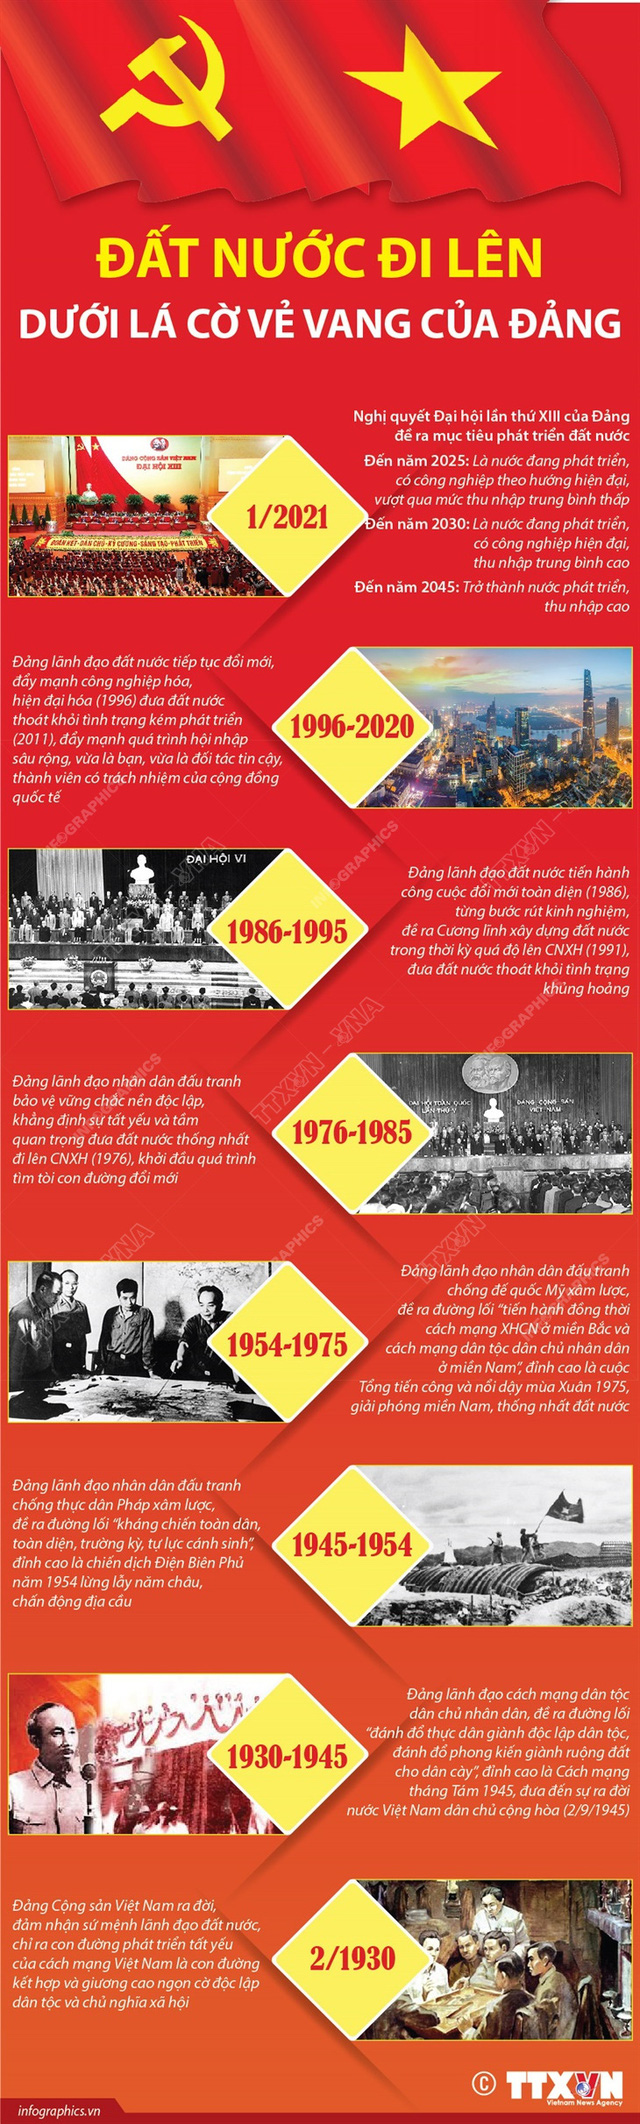 Kỷ niệm 92 năm ngày thành lập Đảng Cộng sản Việt Nam - Ảnh 1.